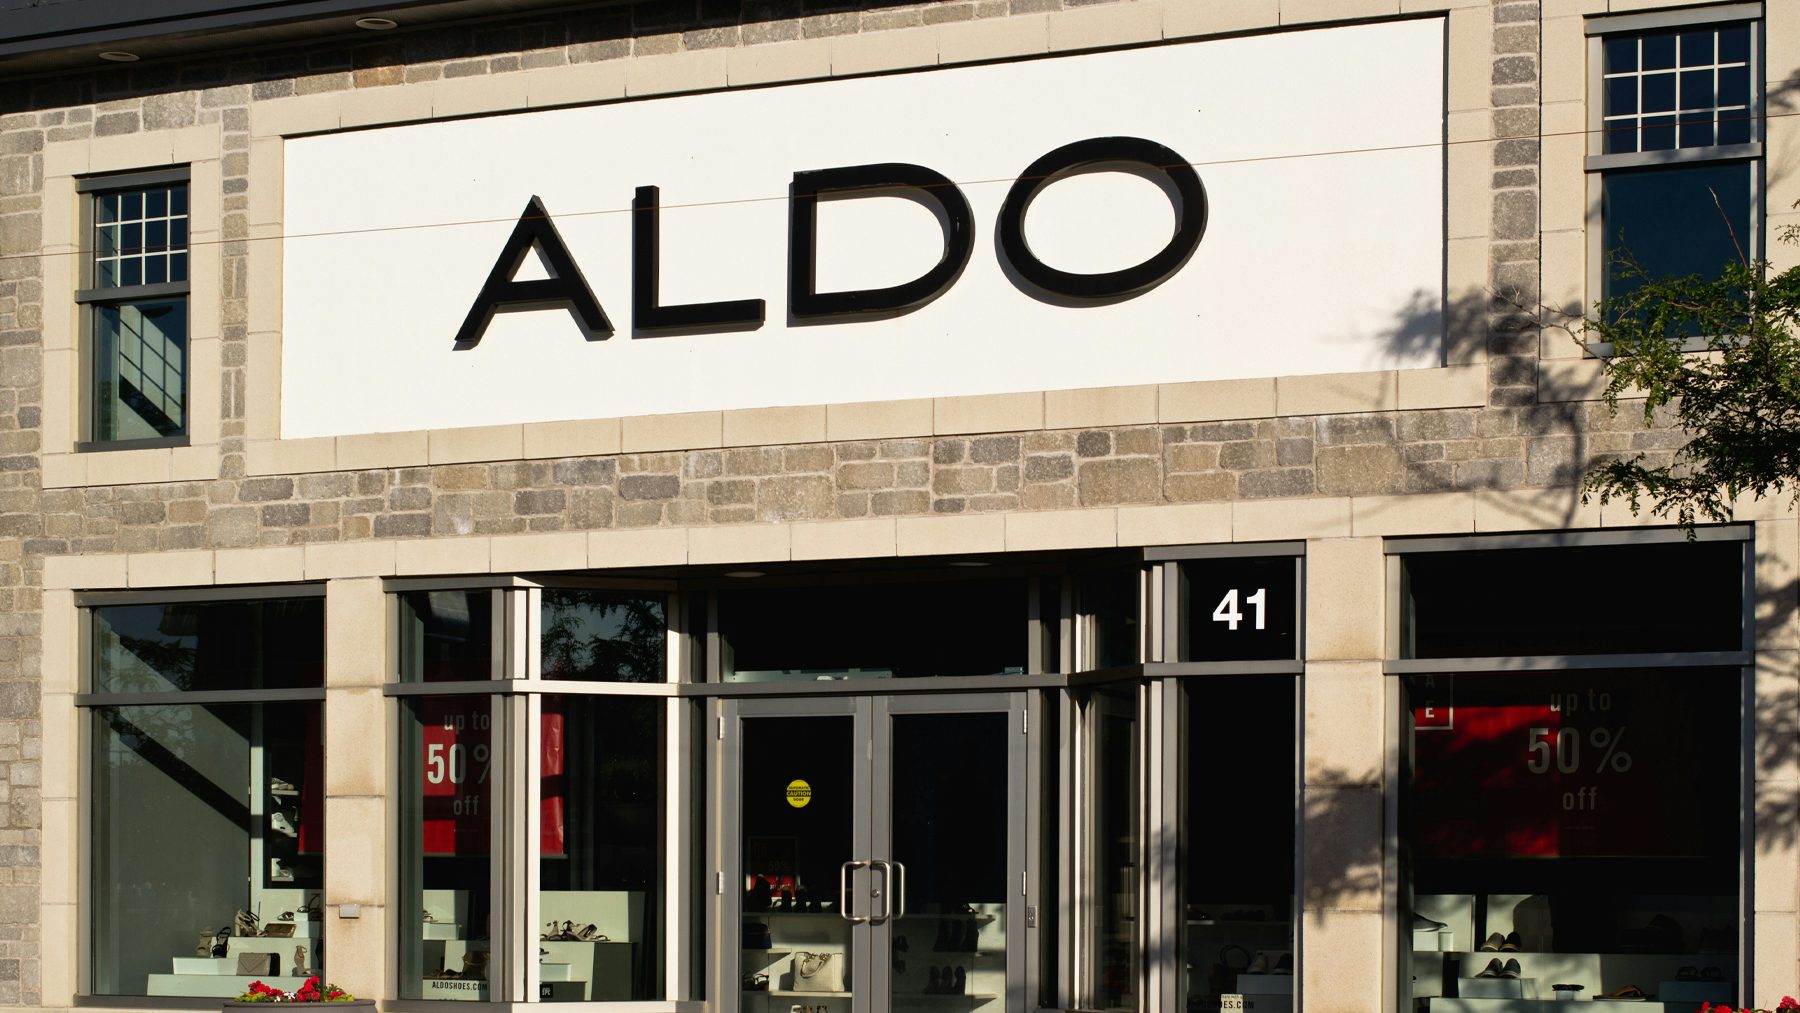 aldo shoes shop